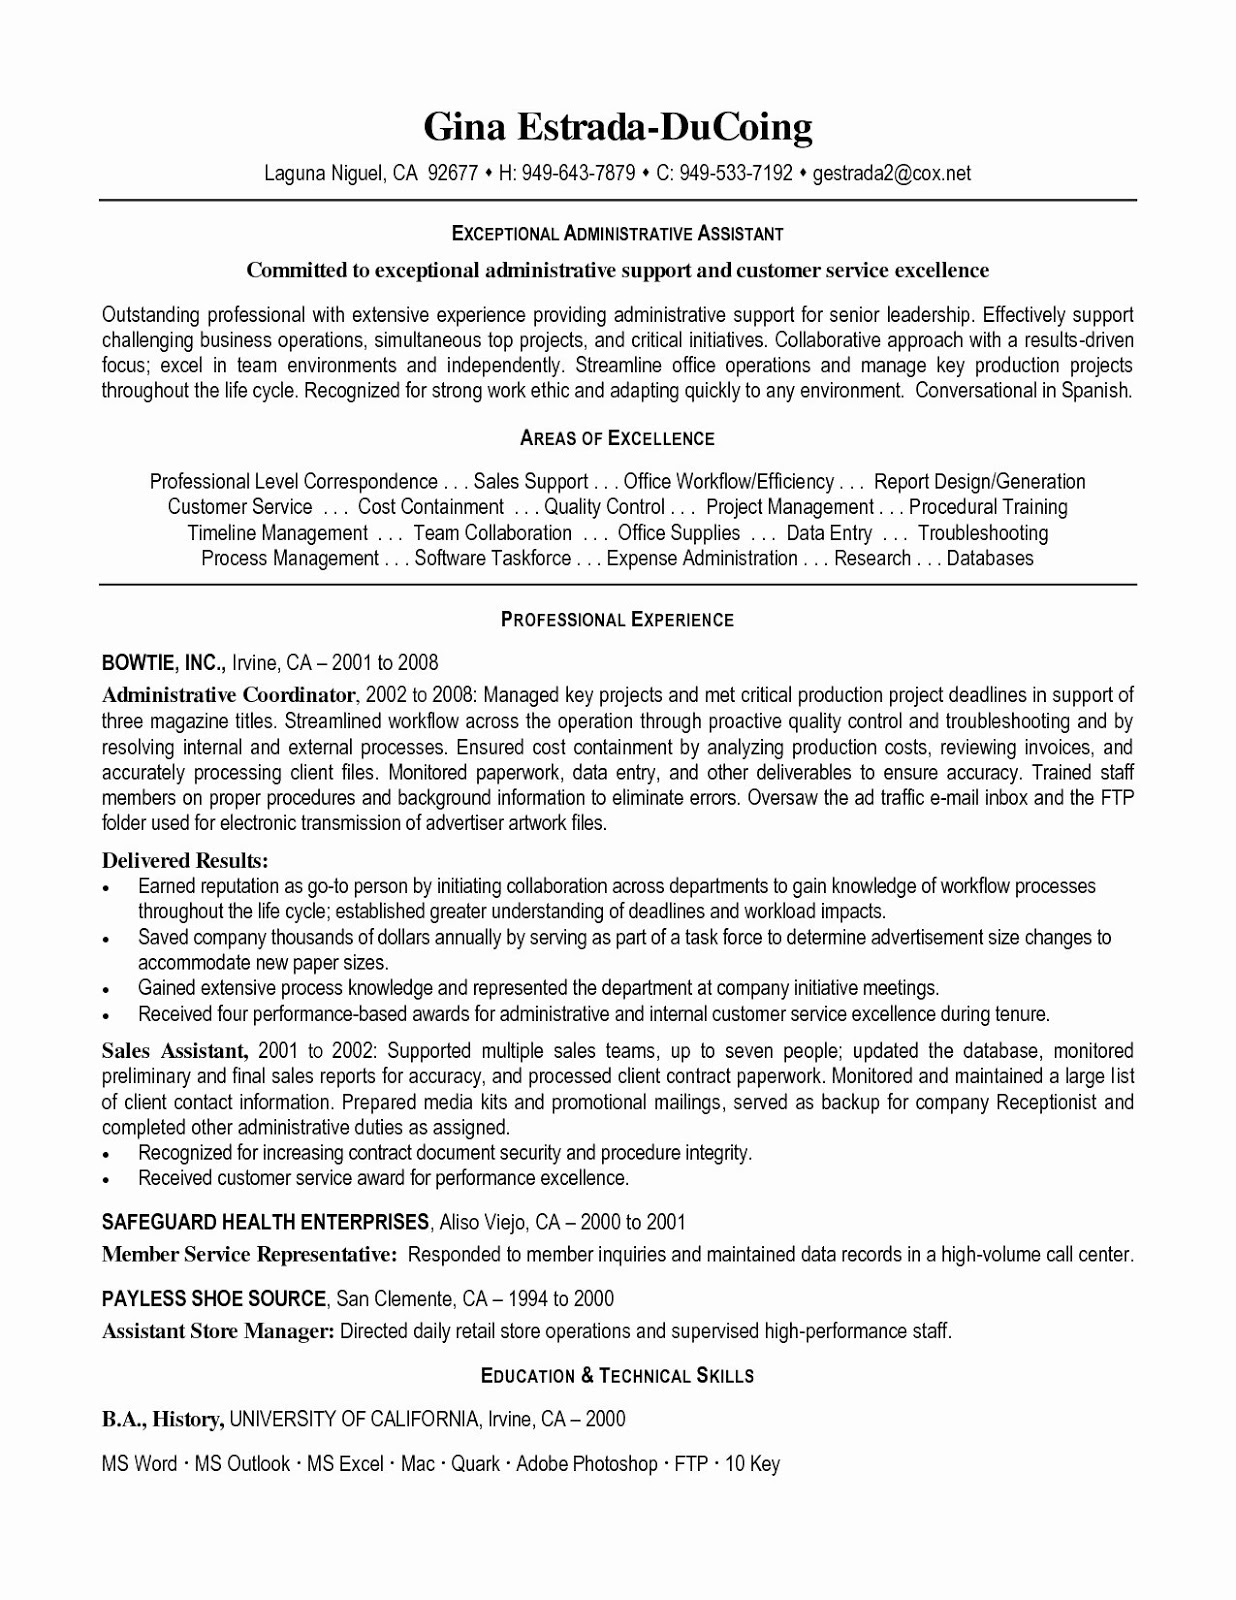 Administrative Assistant Job Description, 2019, administrative assistant job description resume, 2020, administrative assistant job description sample, administrative assistant job descriptions